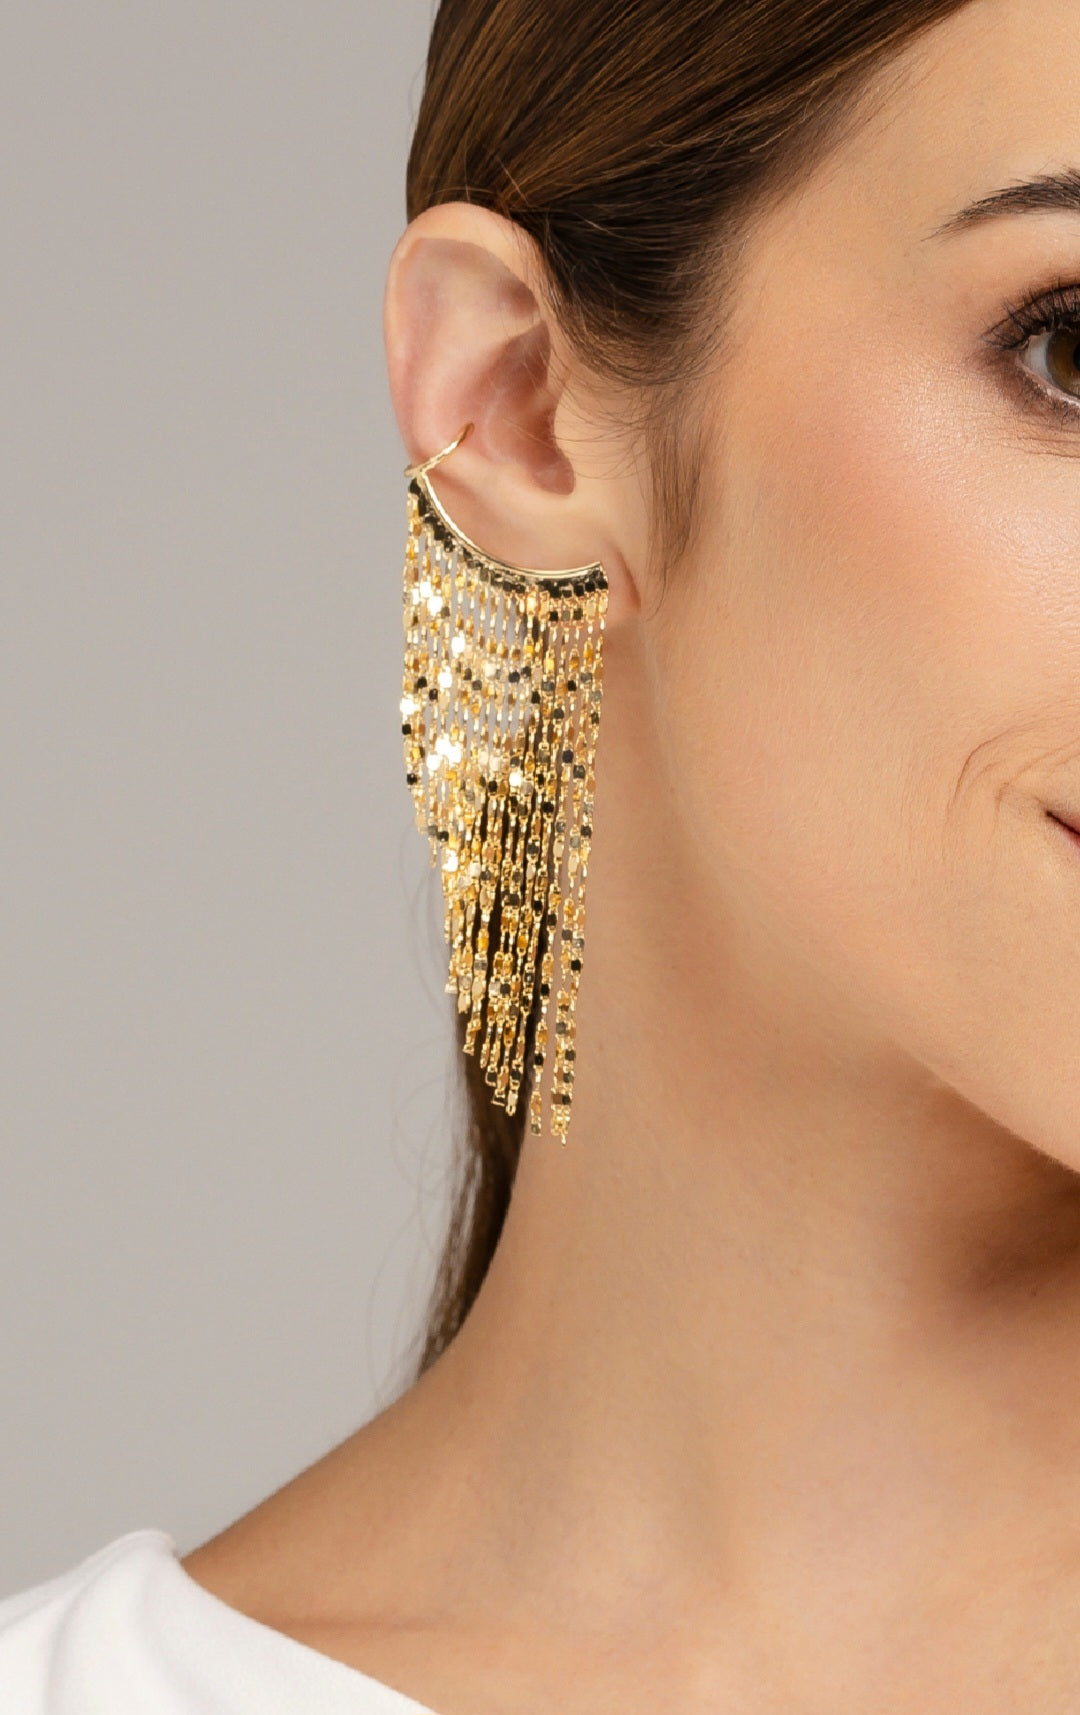 Golden statement earrings